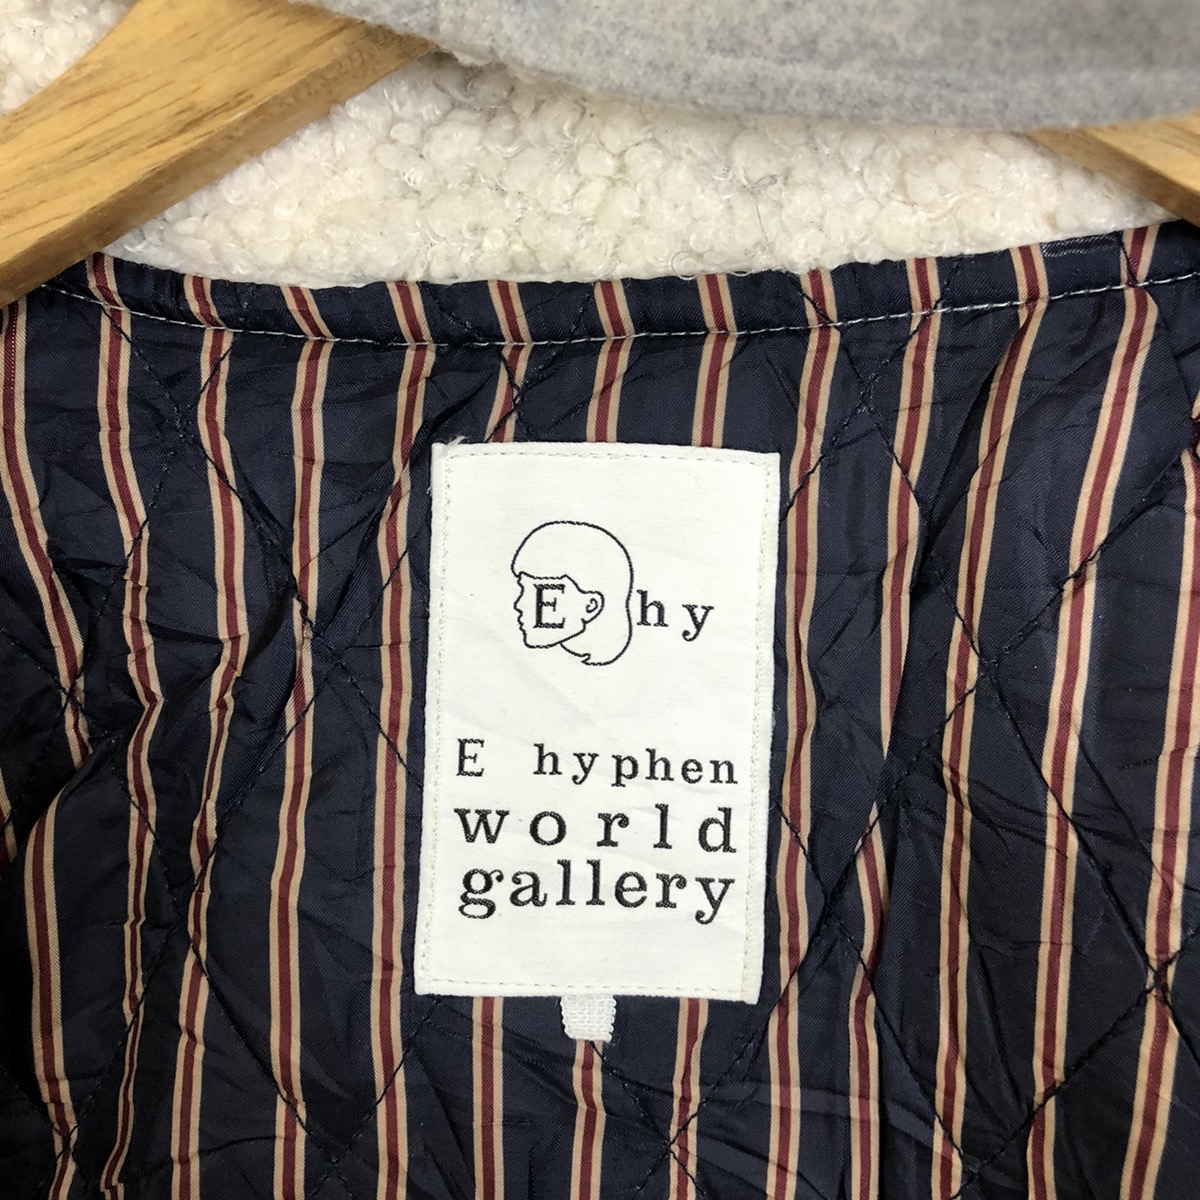 Vintage - Ehyphen World Gallery Grey Hoodies Varsity Jacket #1553 - 8